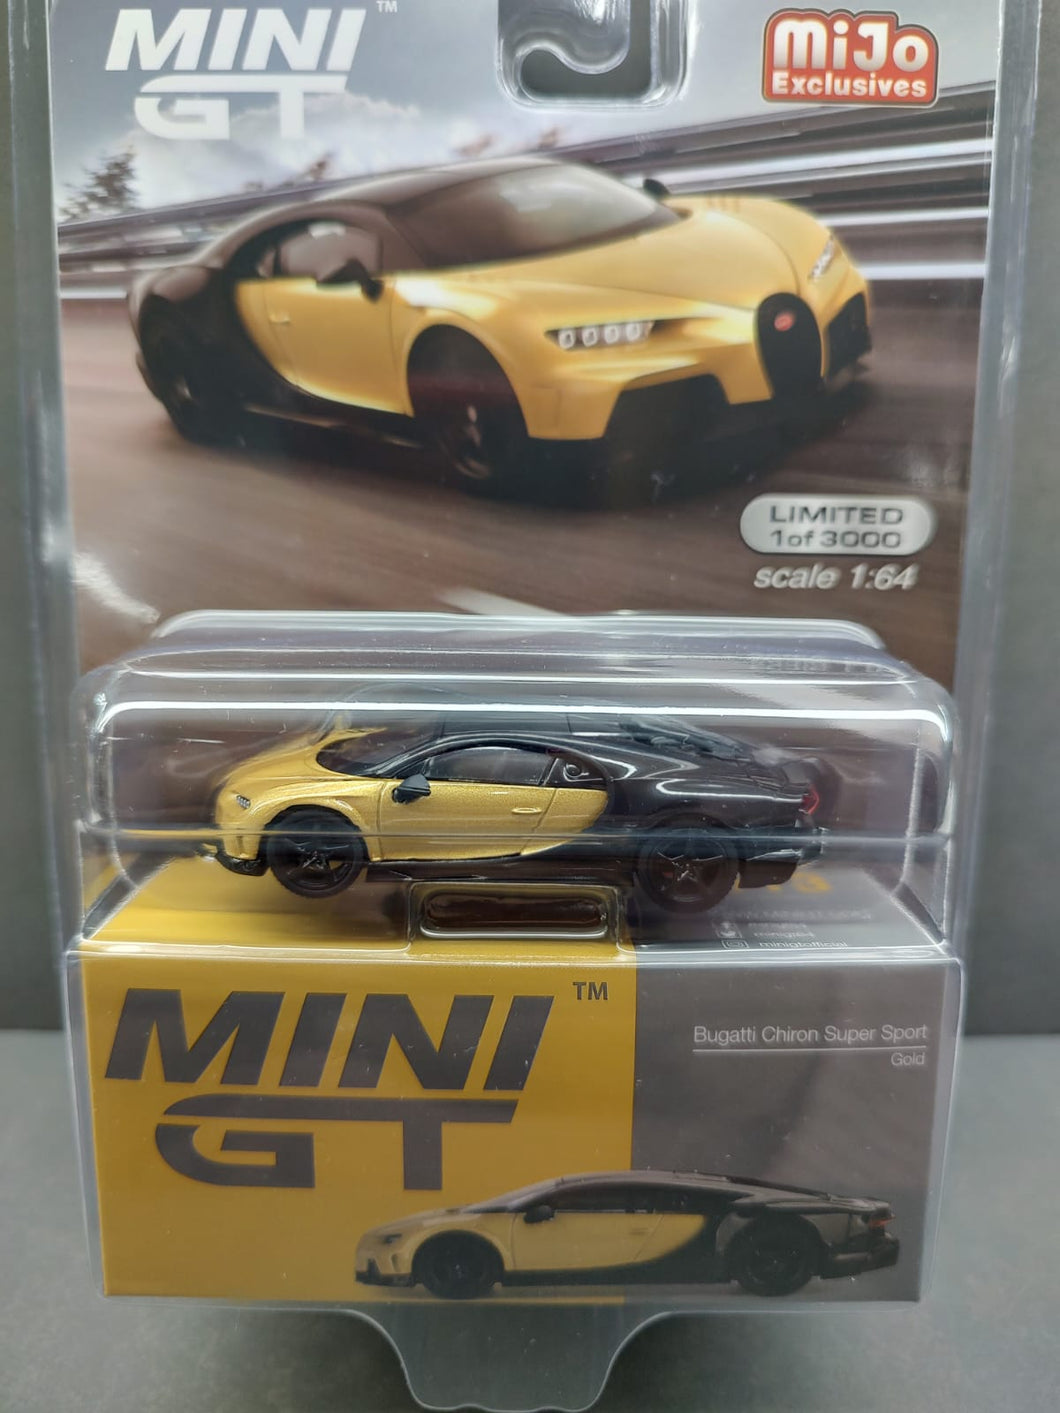 Auto a escala Marca Mini GT Bugatti Chiron Super Sport Gold